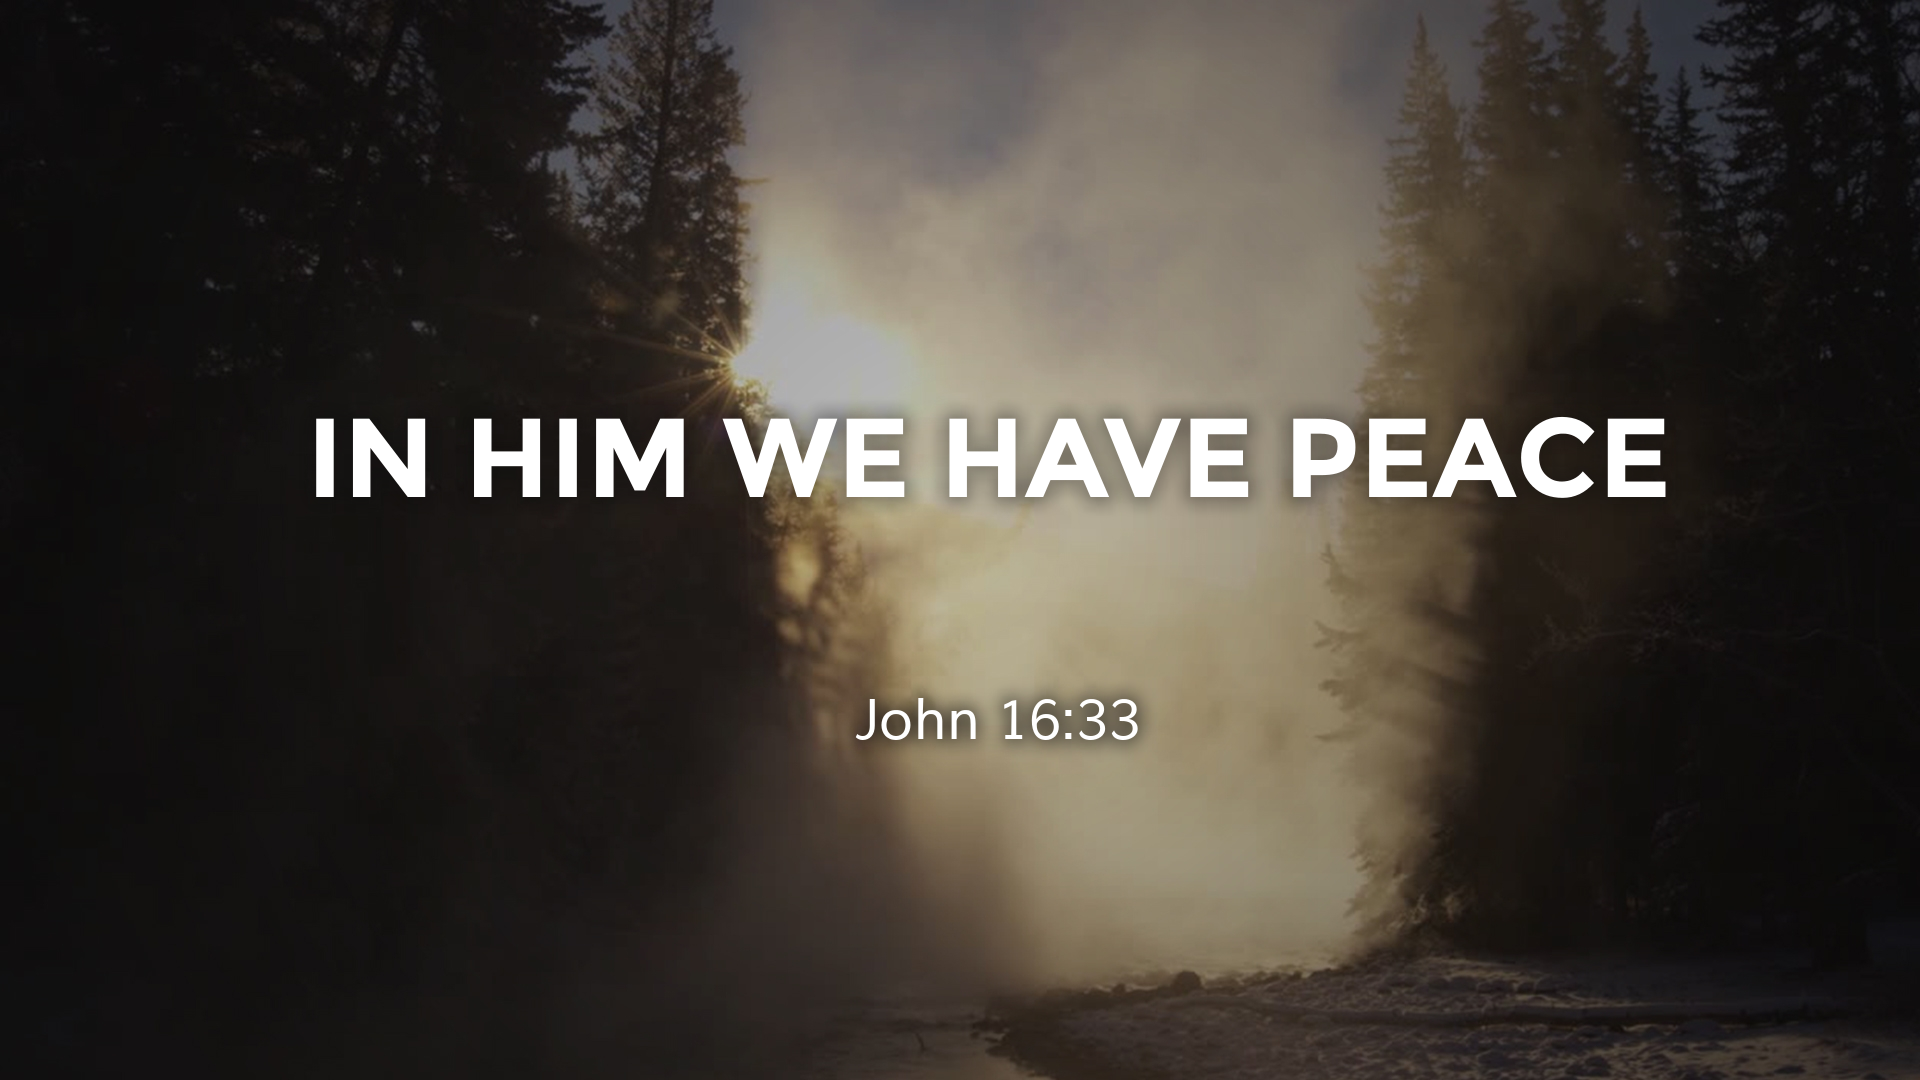 Nov 7, 2021 - In Him We Have Peace (Video) - John 16: 33